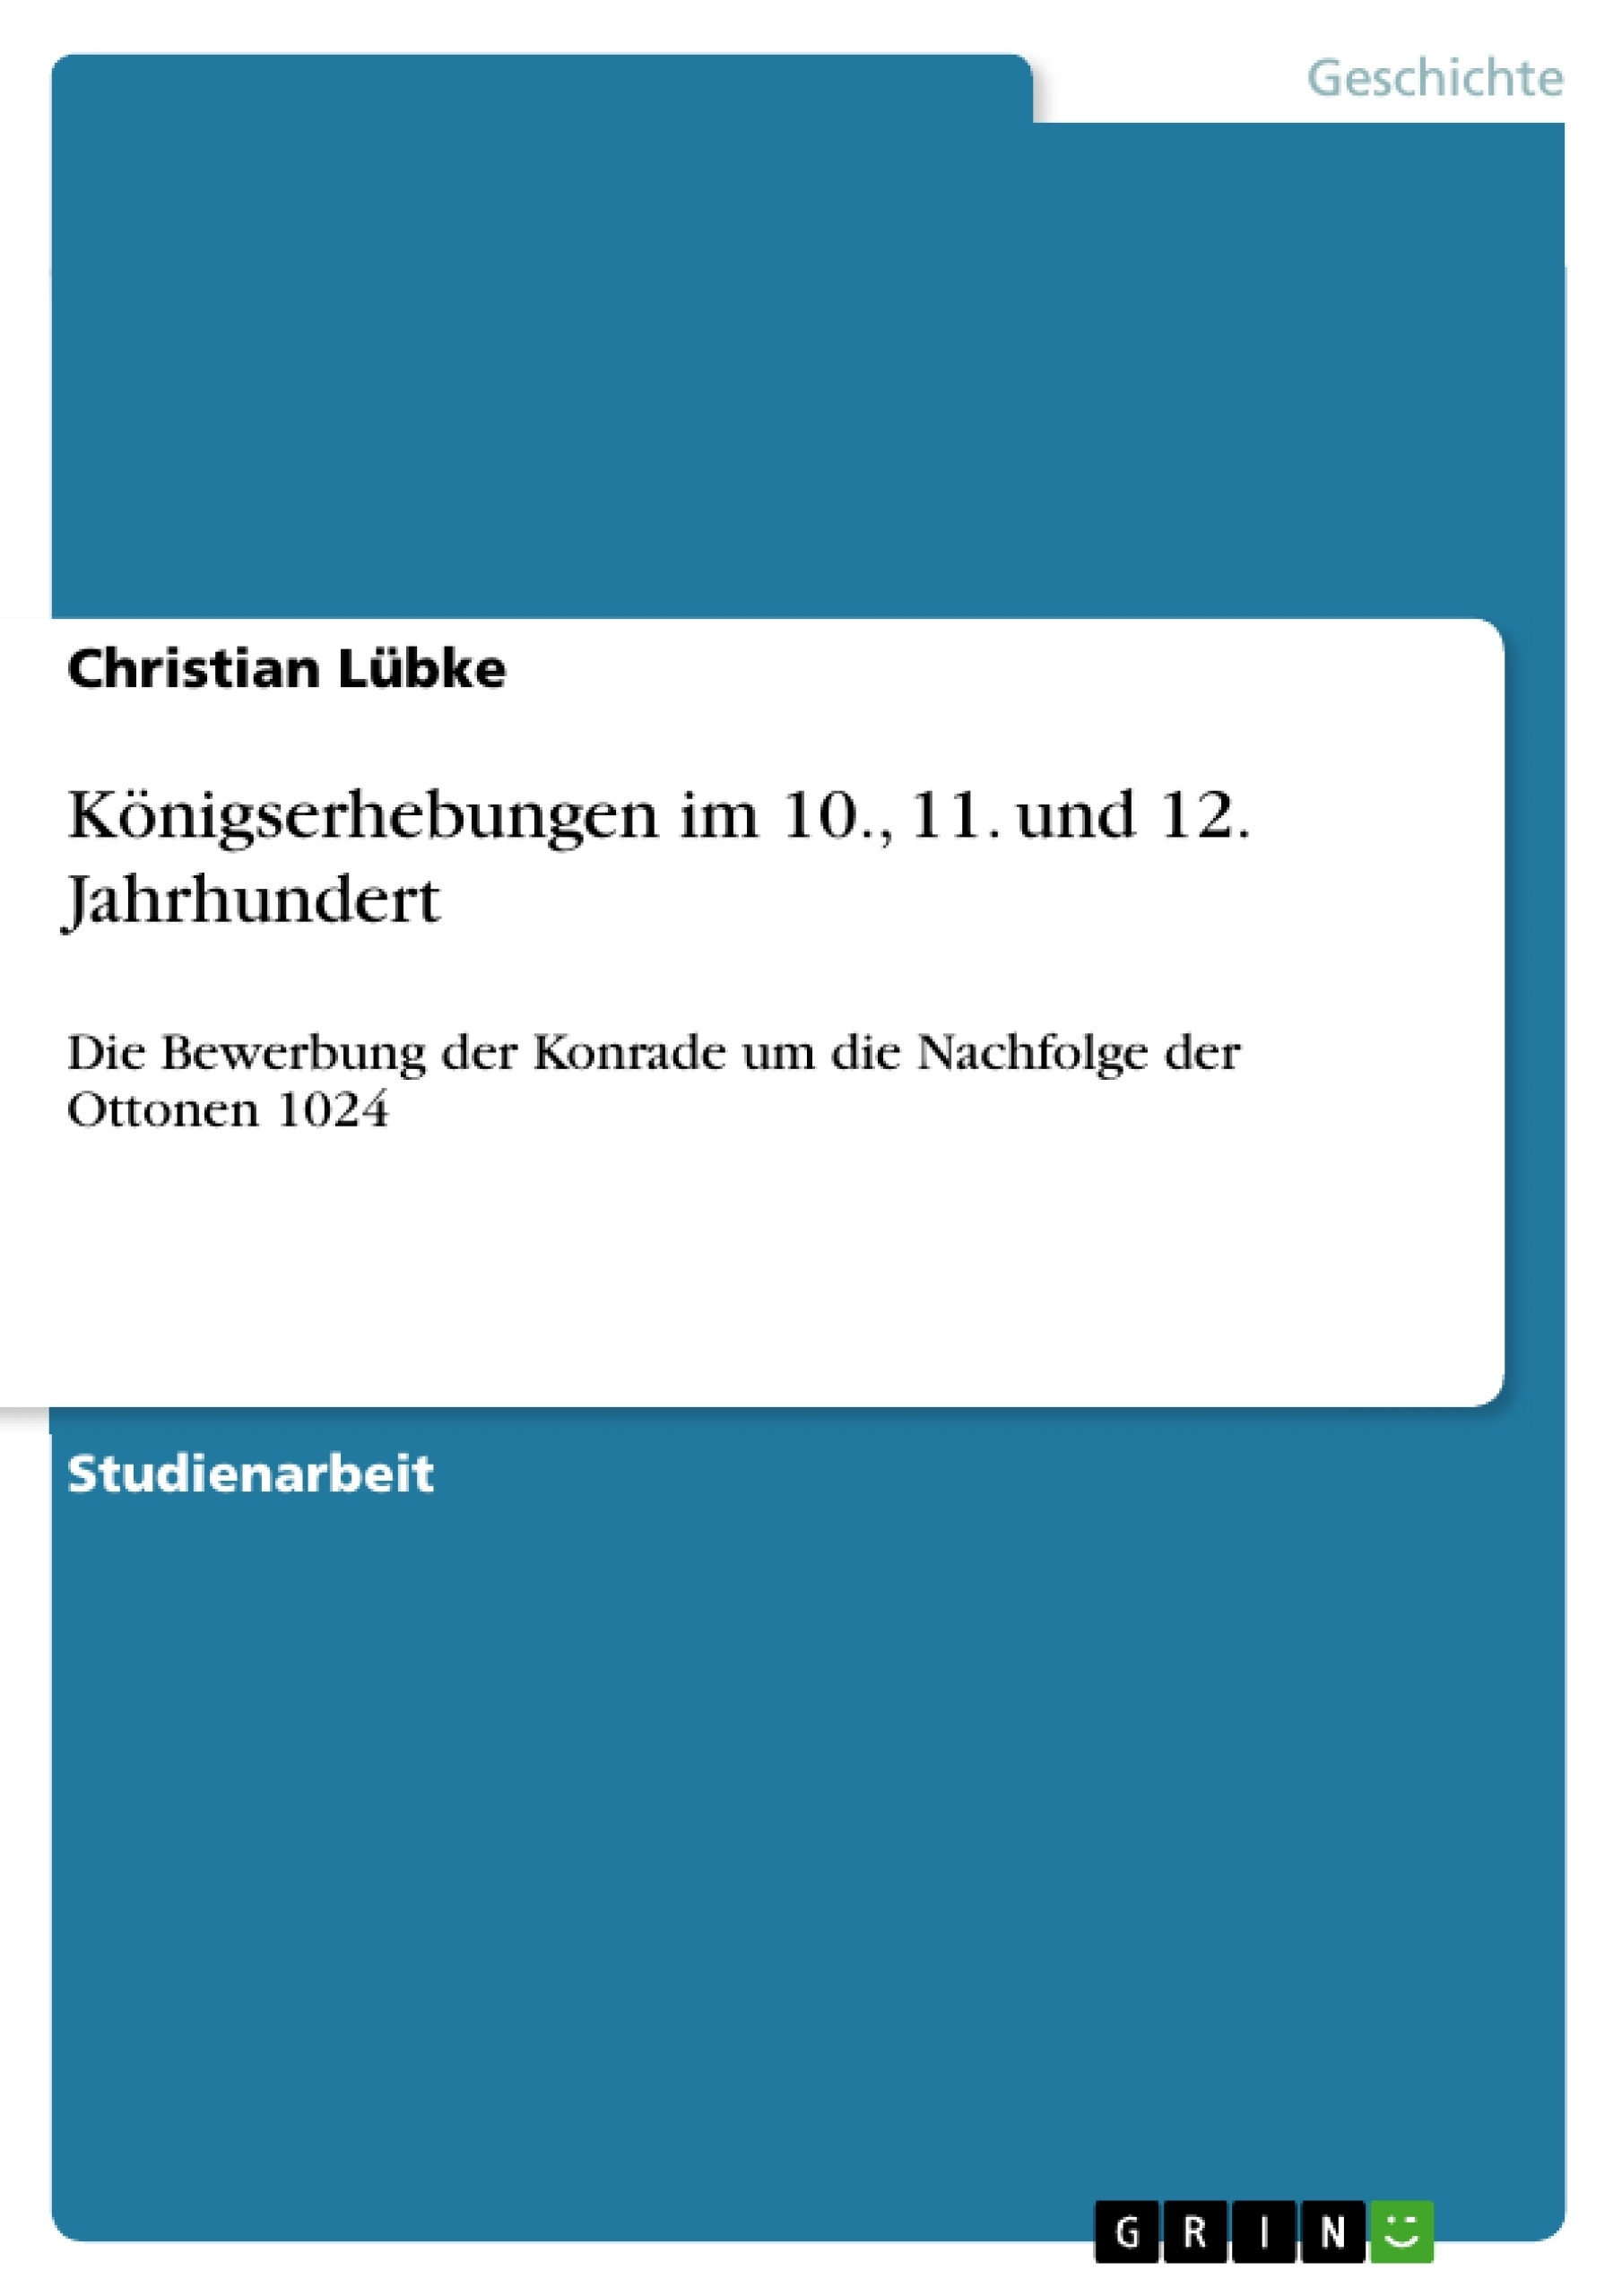 Titre: Königserhebungen im 10., 11. und 12. Jahrhundert     